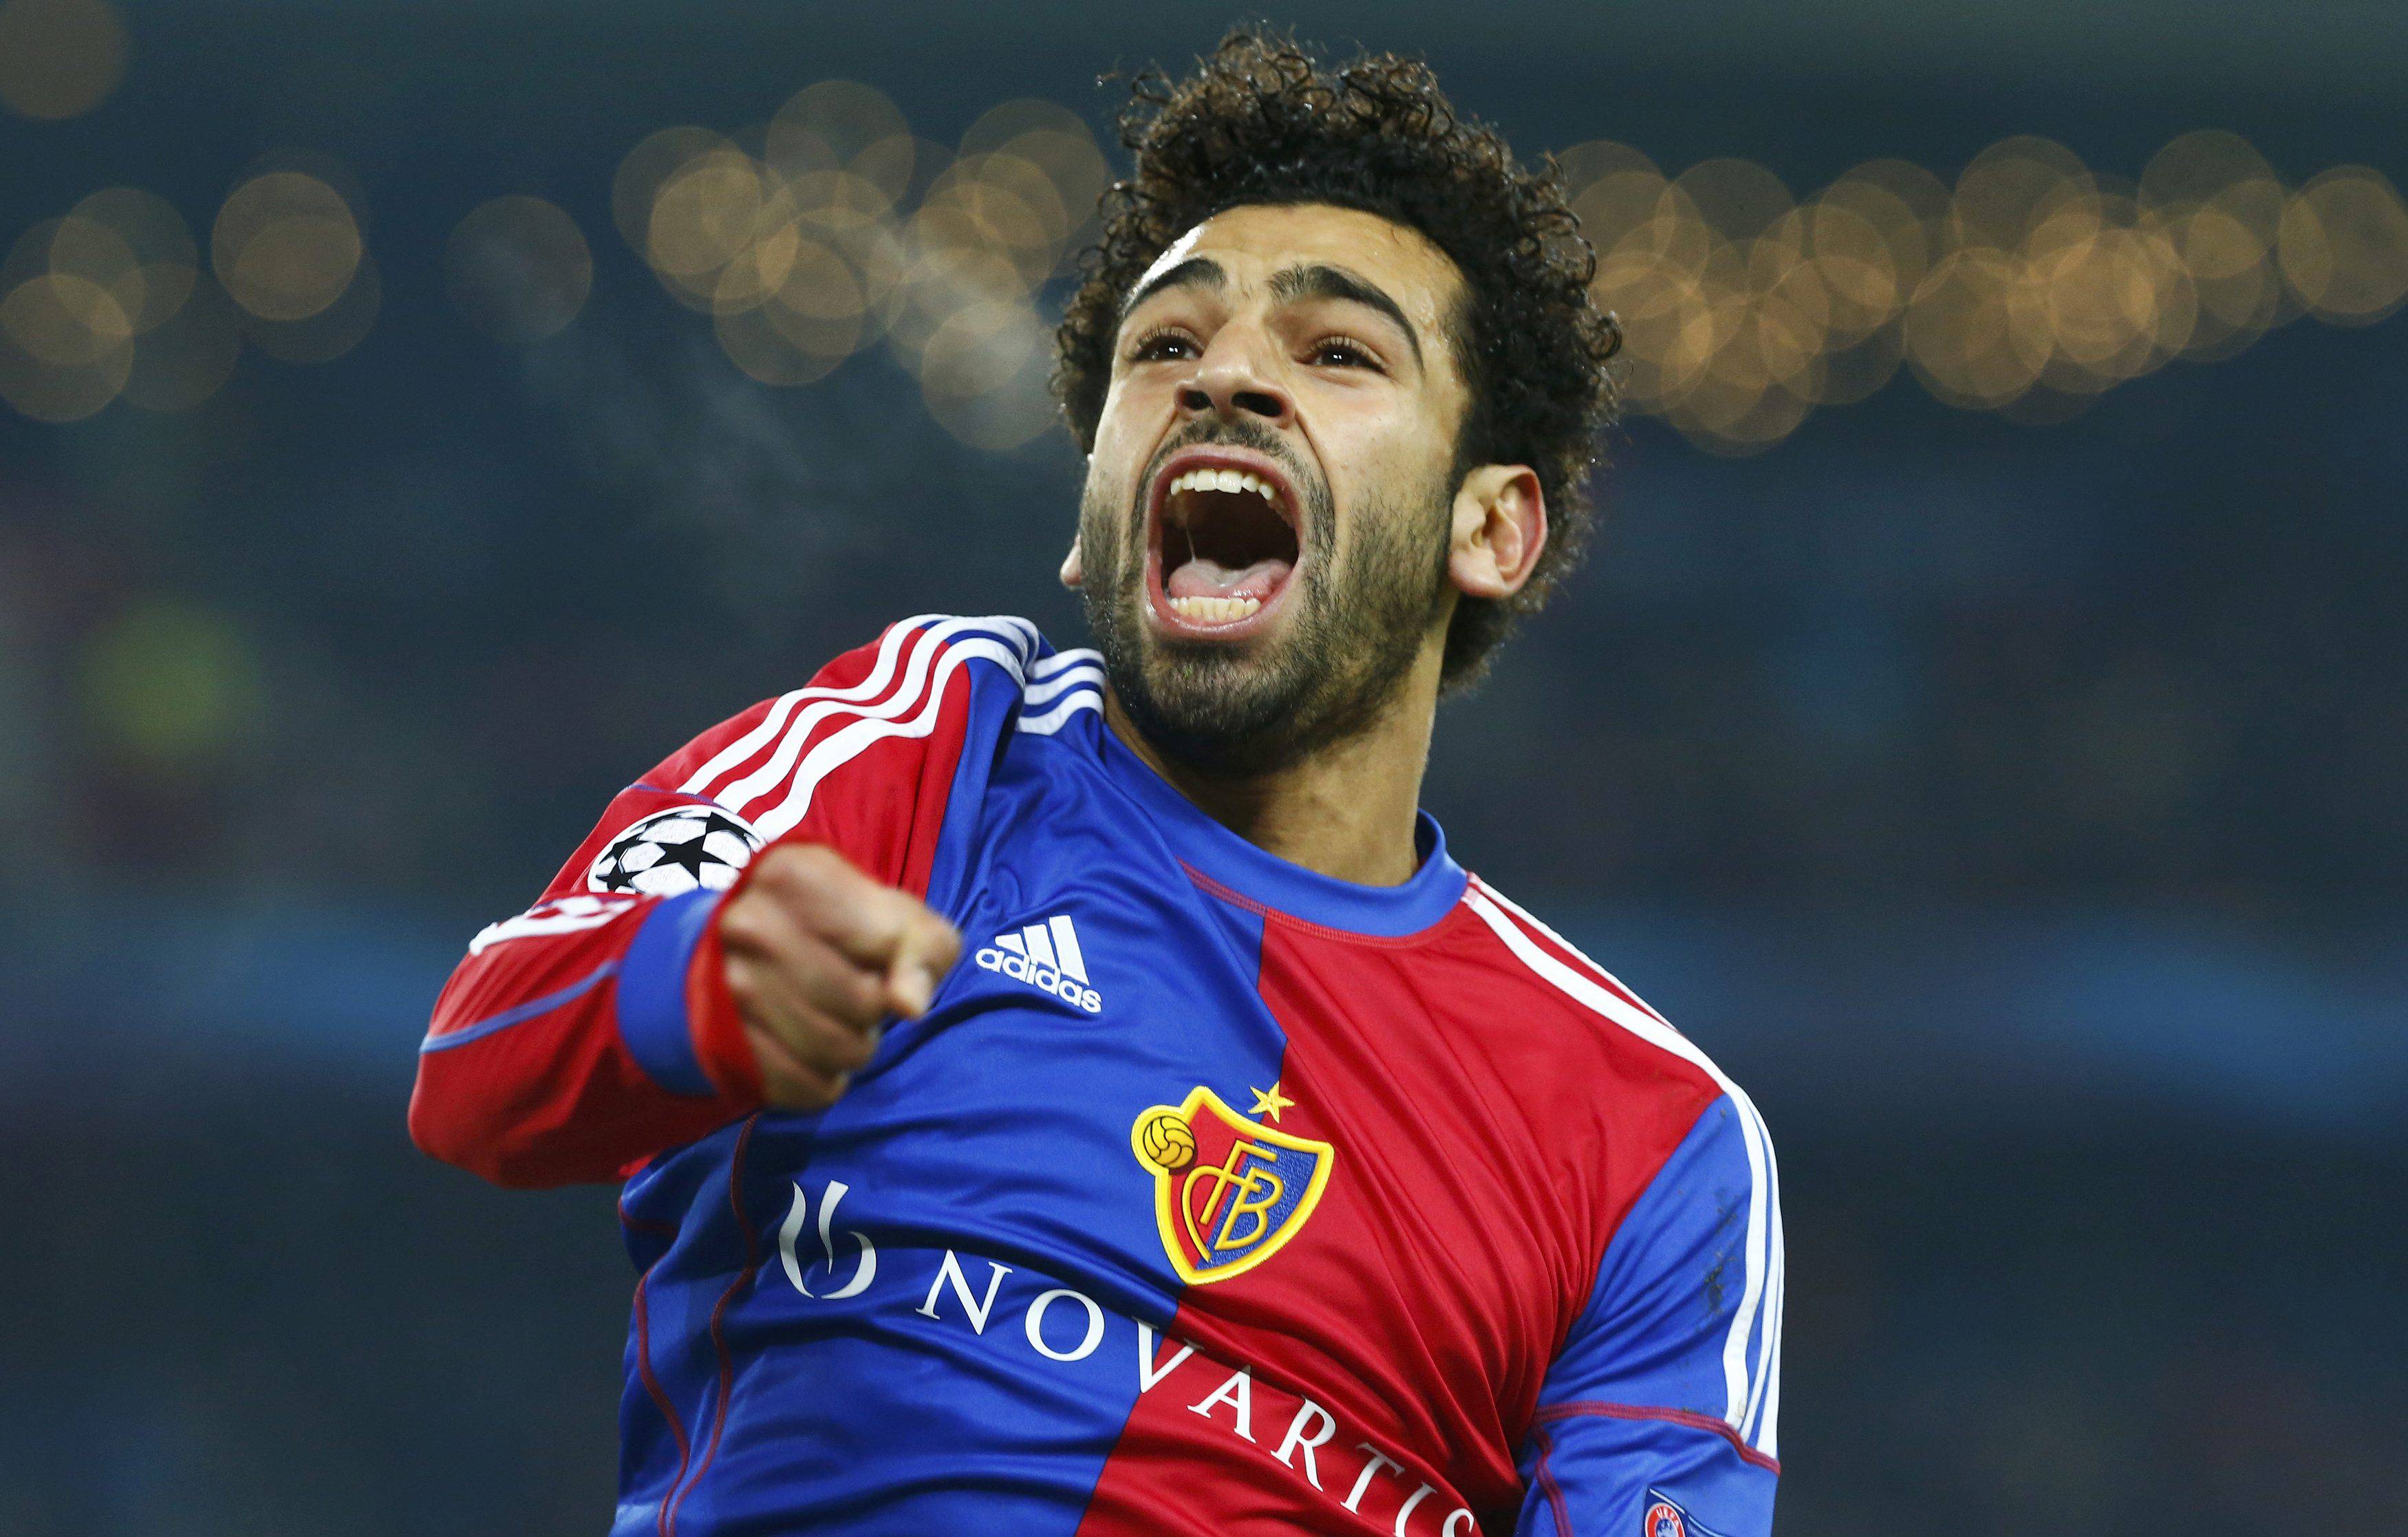 Download mobile wallpaper Sports, Soccer, Mohamed Salah for free.